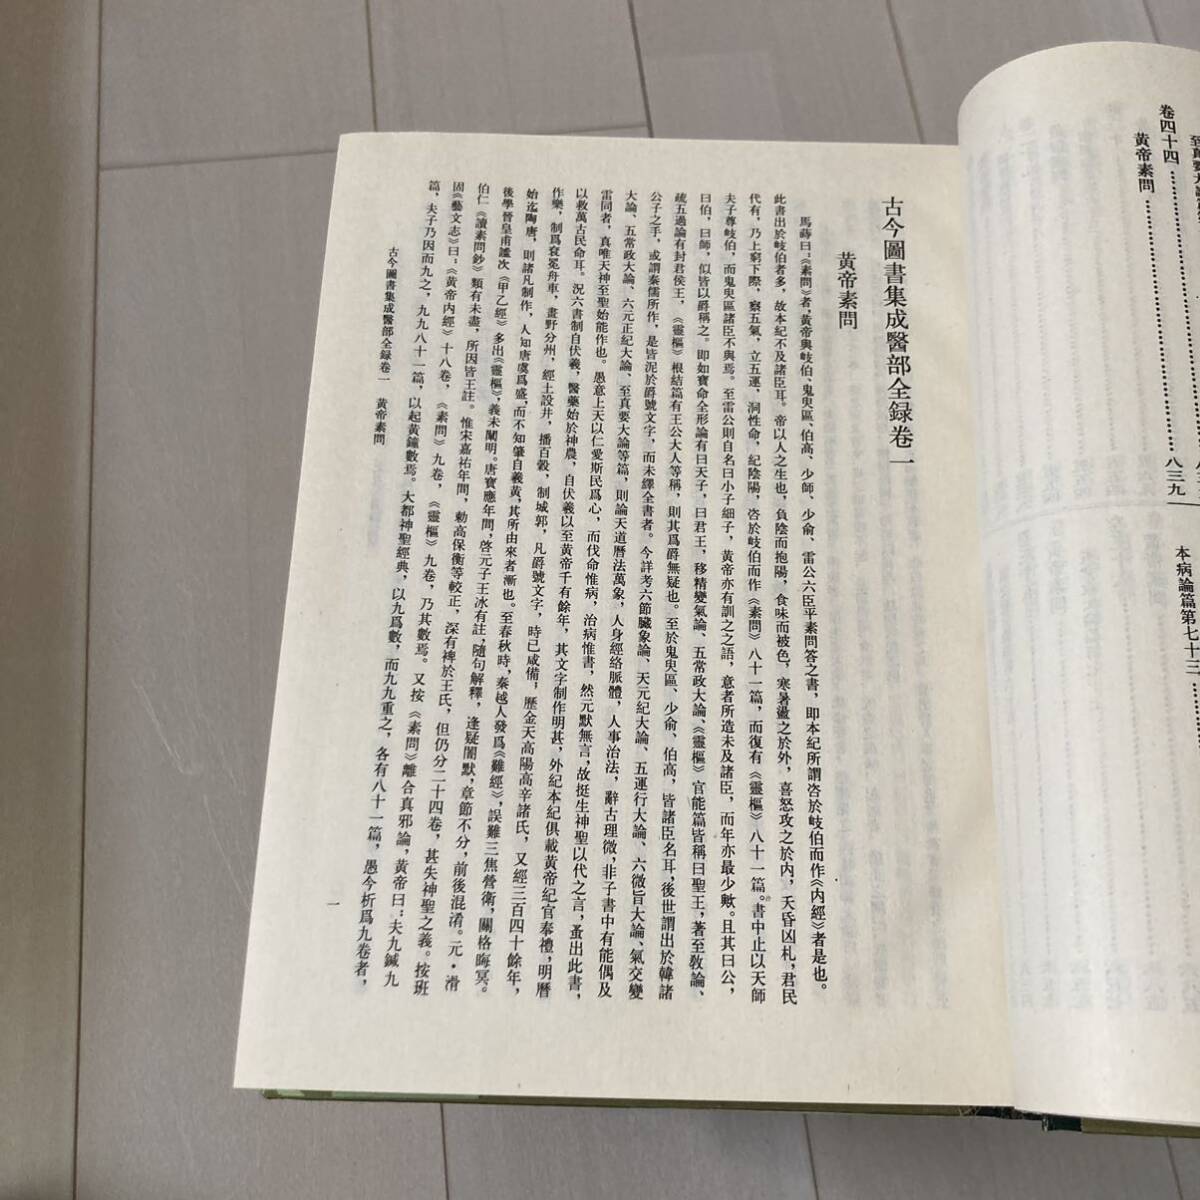 J 1991年発行 唐本 影印本 精装本 中国書 「古今圖書集成醫部全録」 全12冊揃_画像9